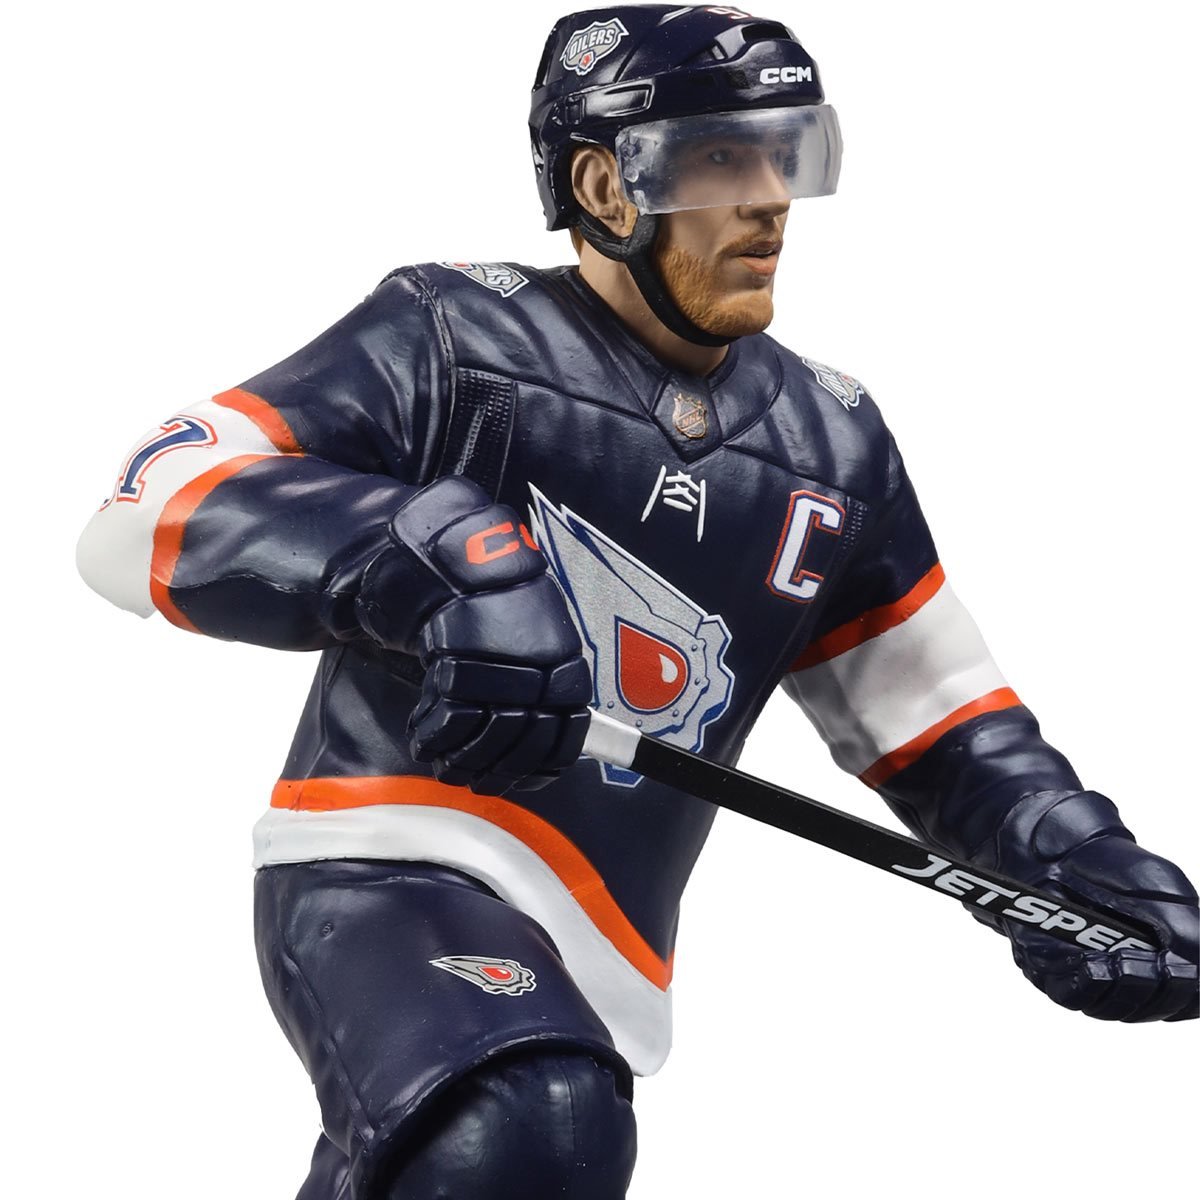 McFarlane Toys Edmonton Oilers Team Shop in NHL Fan Shop 